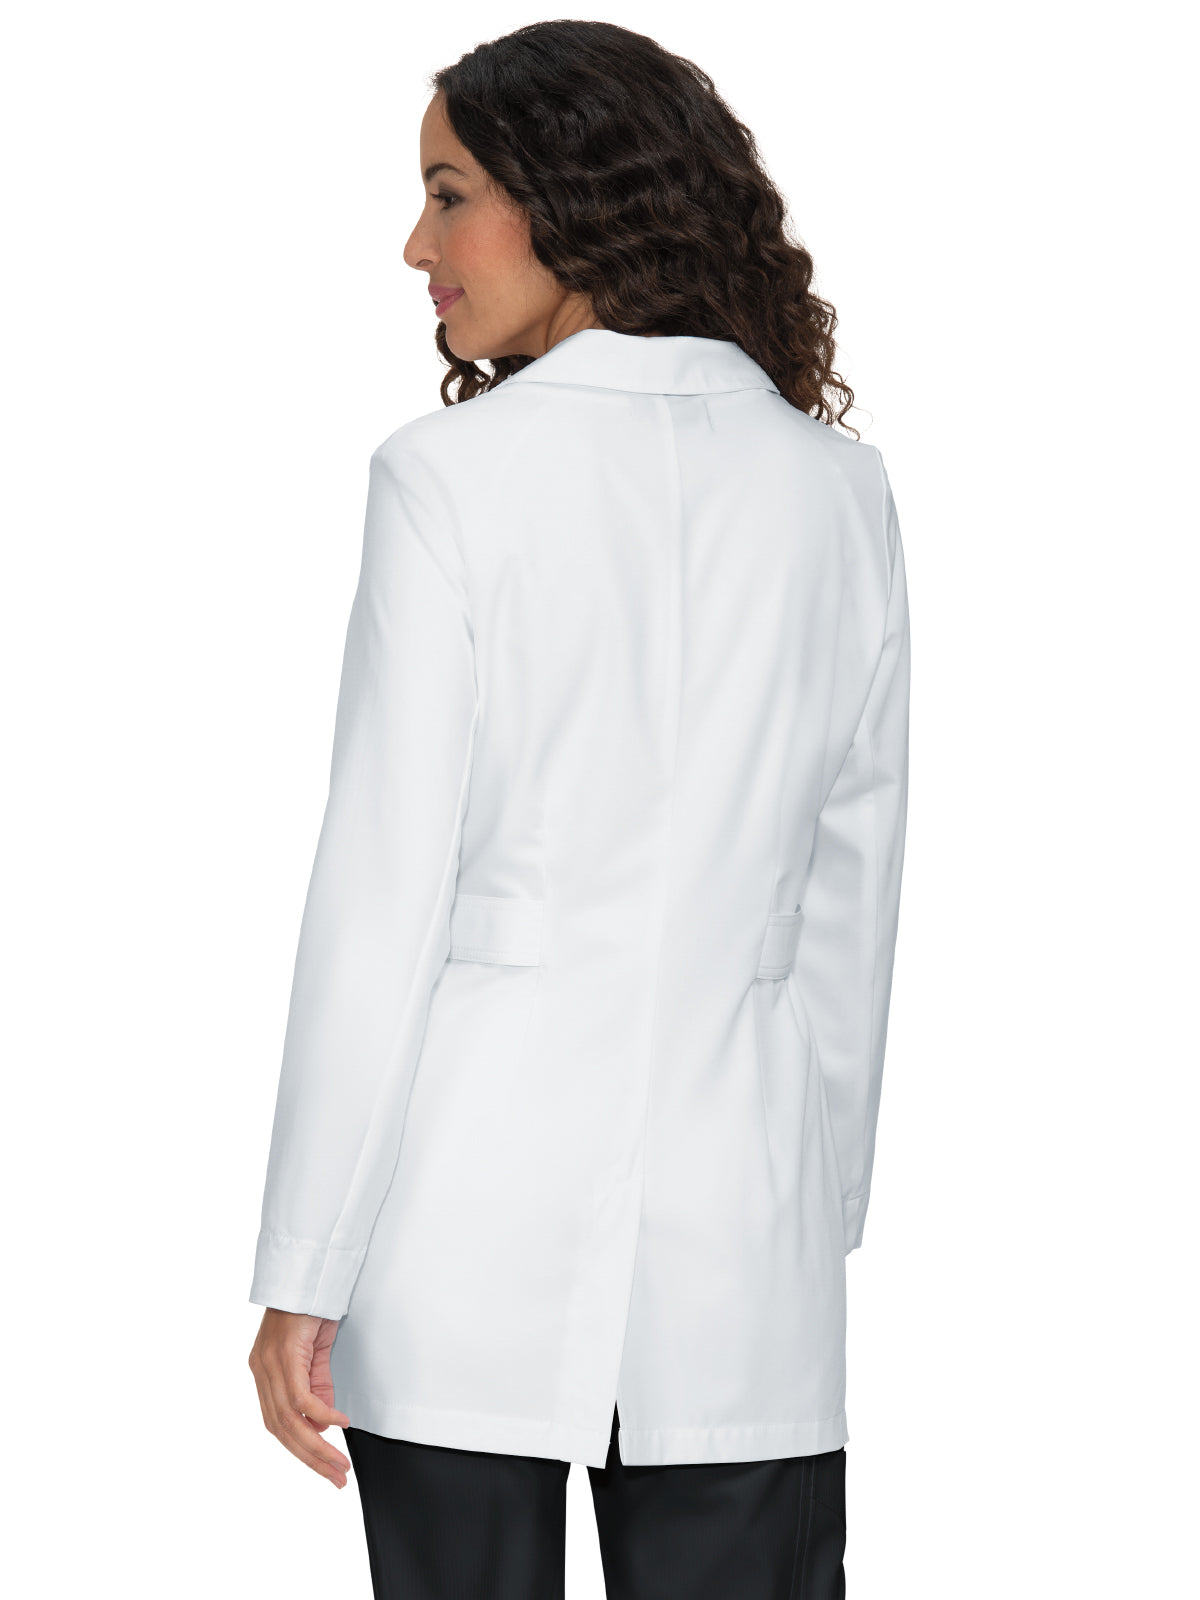 Women's Button-Front Lab Coat